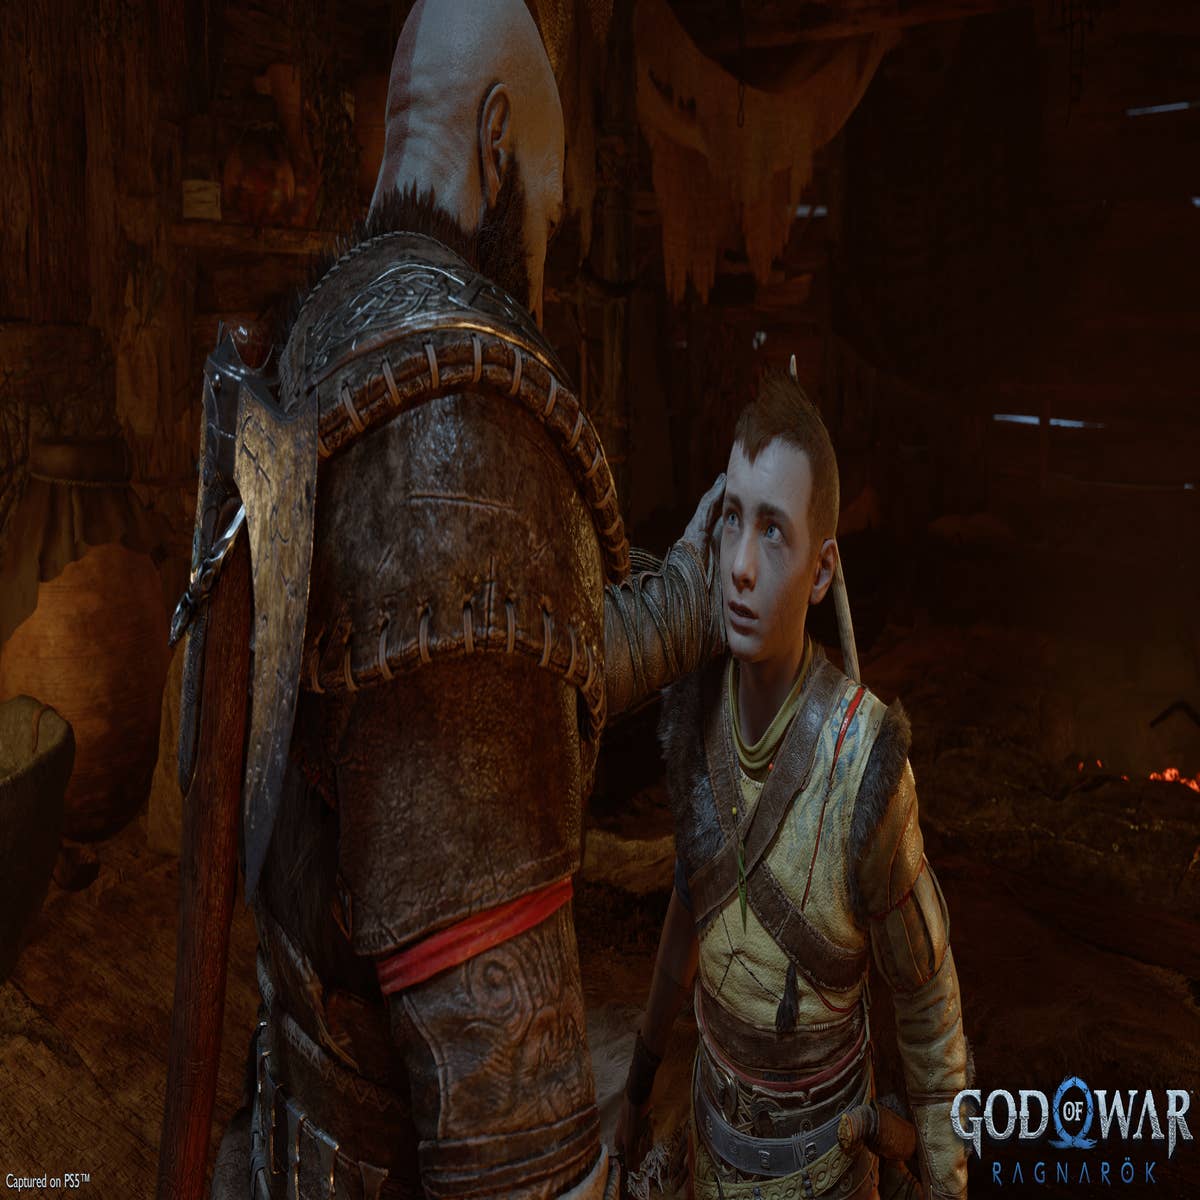 God Of War Ragnarok - Full Story Trailer Breakdown! New Plot